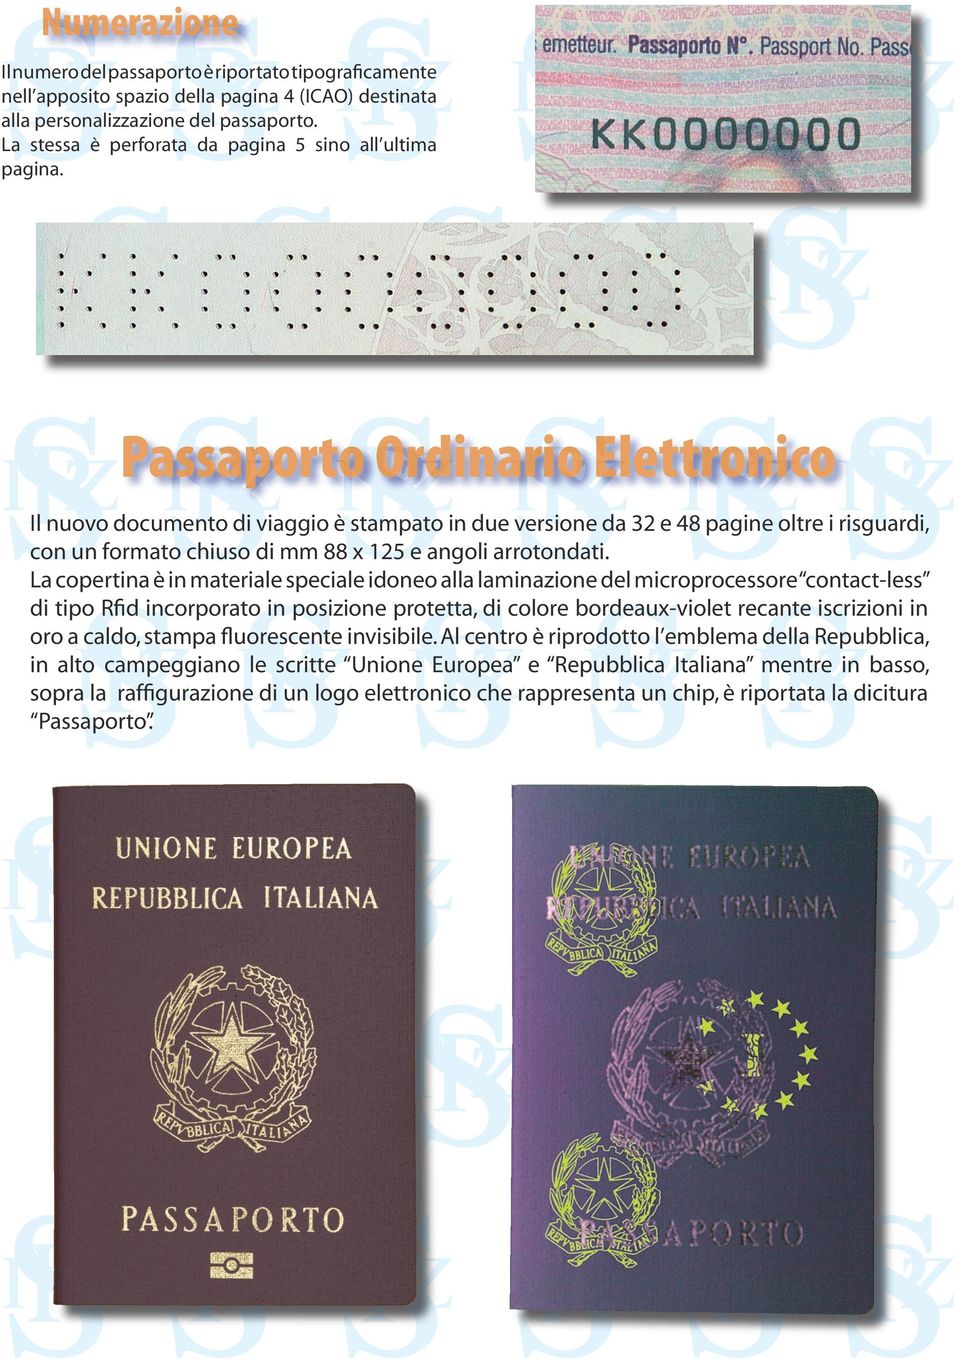 Passaporto Ordinario Elettronico Il nuovo documento di viaggio è stampato in due versione da 32 e 48 pagine oltre i risguardi, con un formato chiuso di mm 88 x 125 e angoli arrotondati.